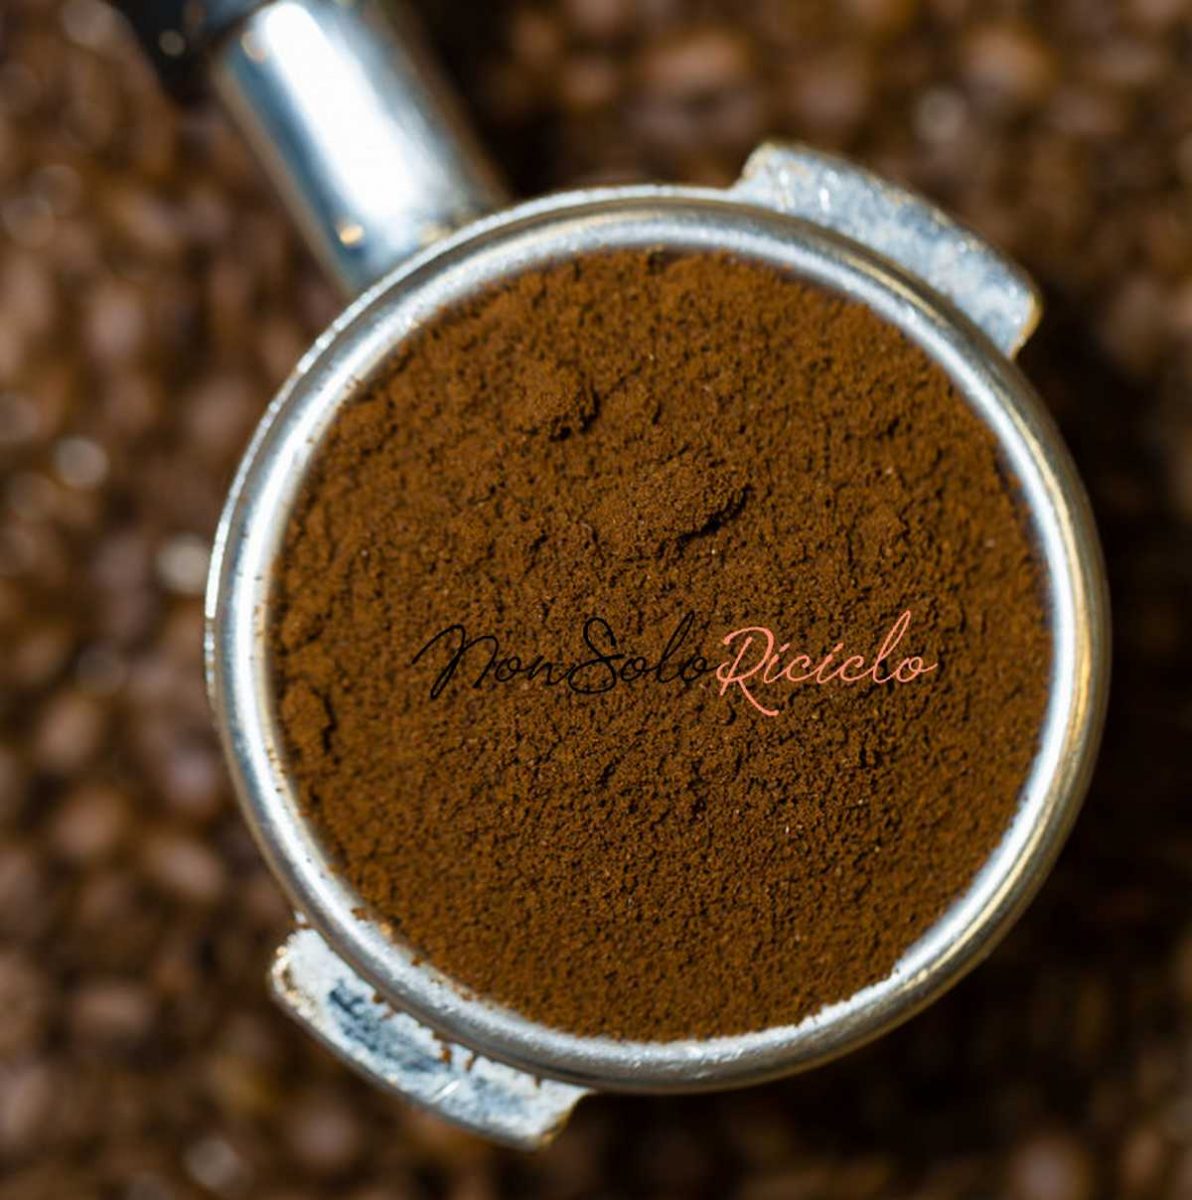 fondi di caffe uno scarto closeup beautiful espresso portafilter full fine arabica coffee grounds 210259 13